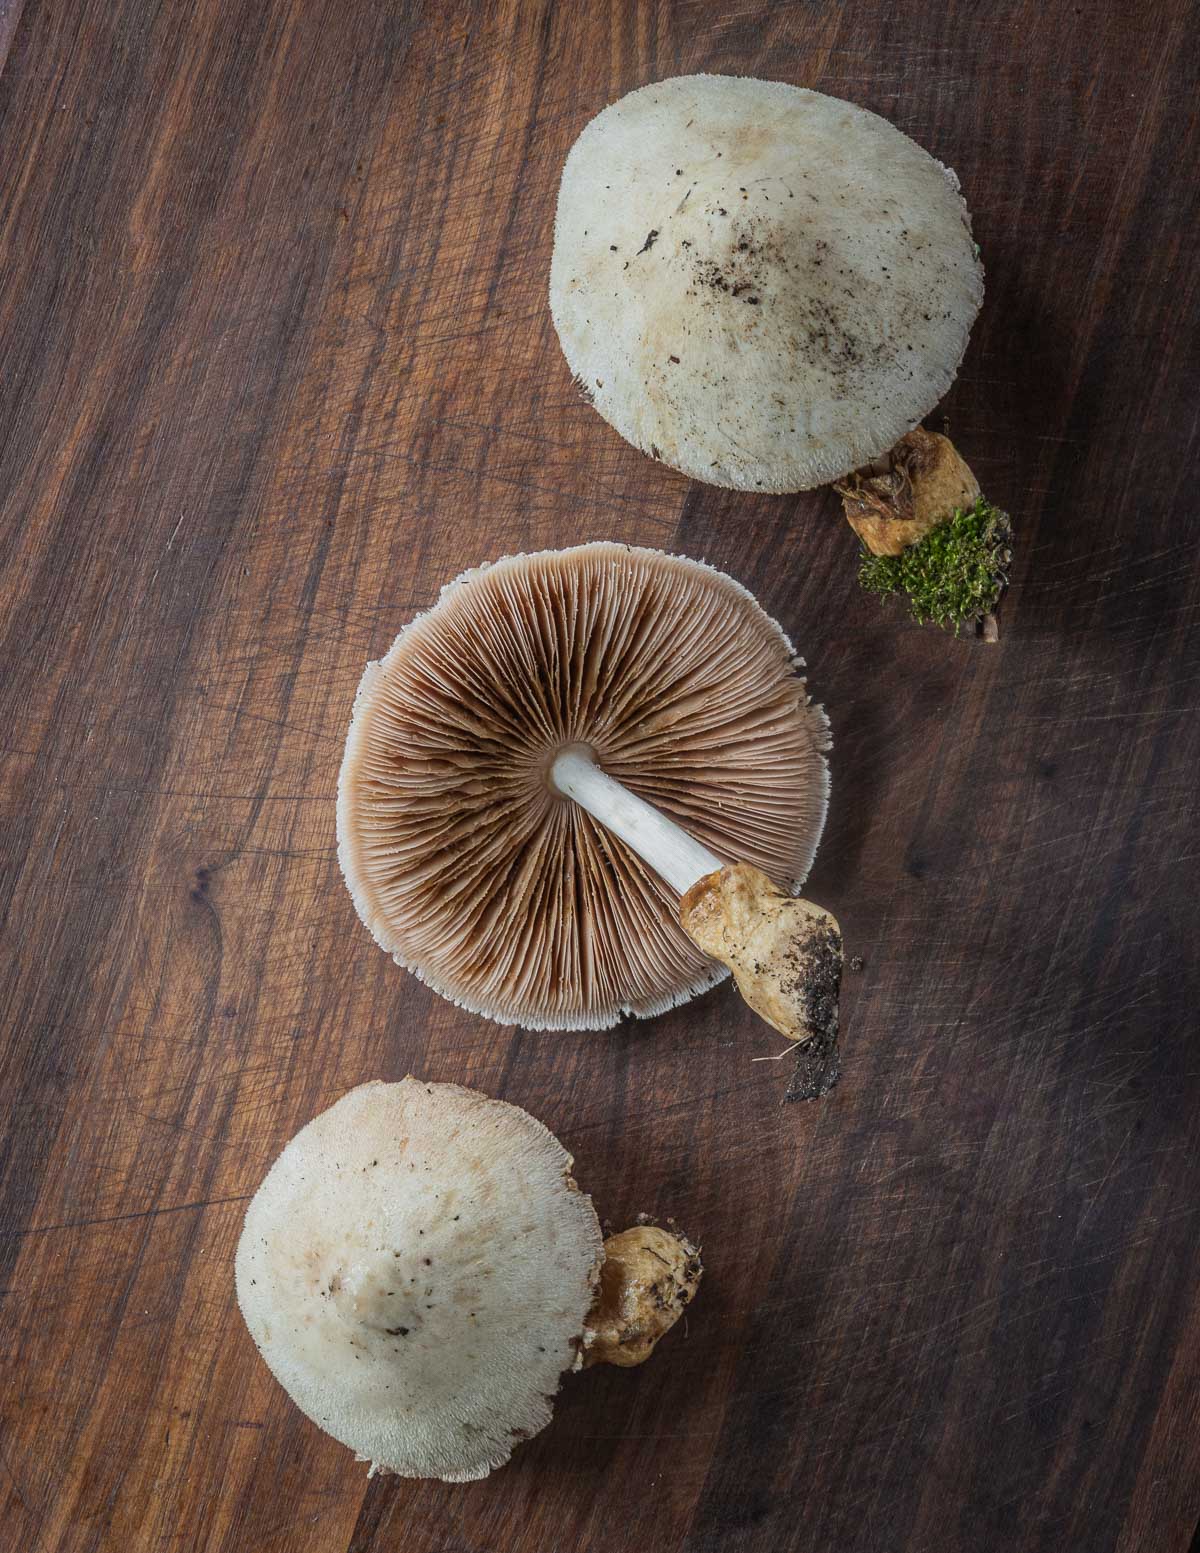 Paddy Straw Mushroom Liquid Culture, Volvariella Volvacea 